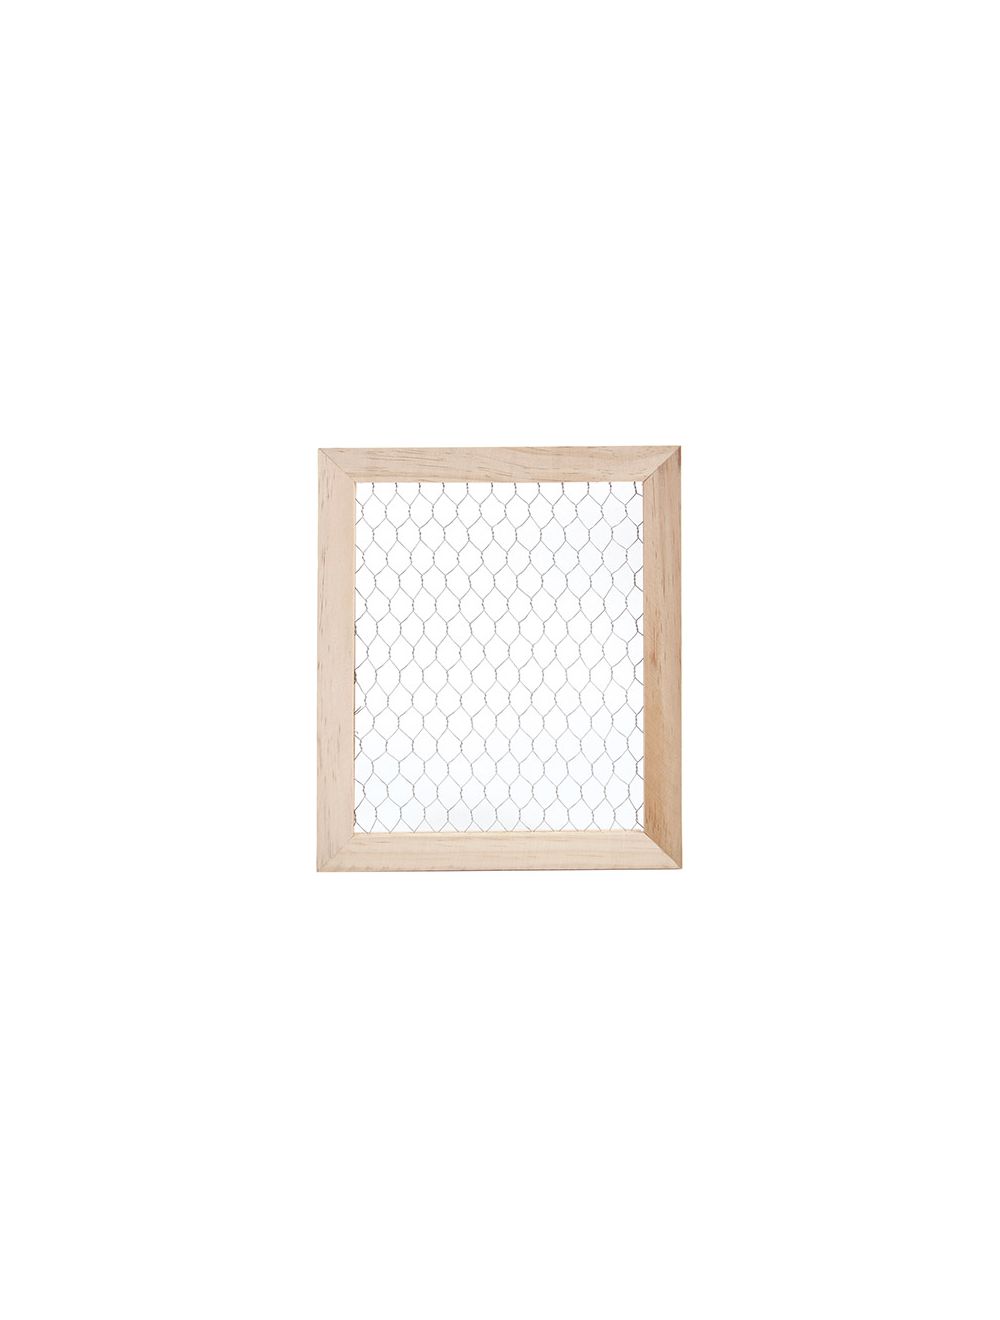 9.5x11.5 - Wood Chicken Wire Frame - Darice